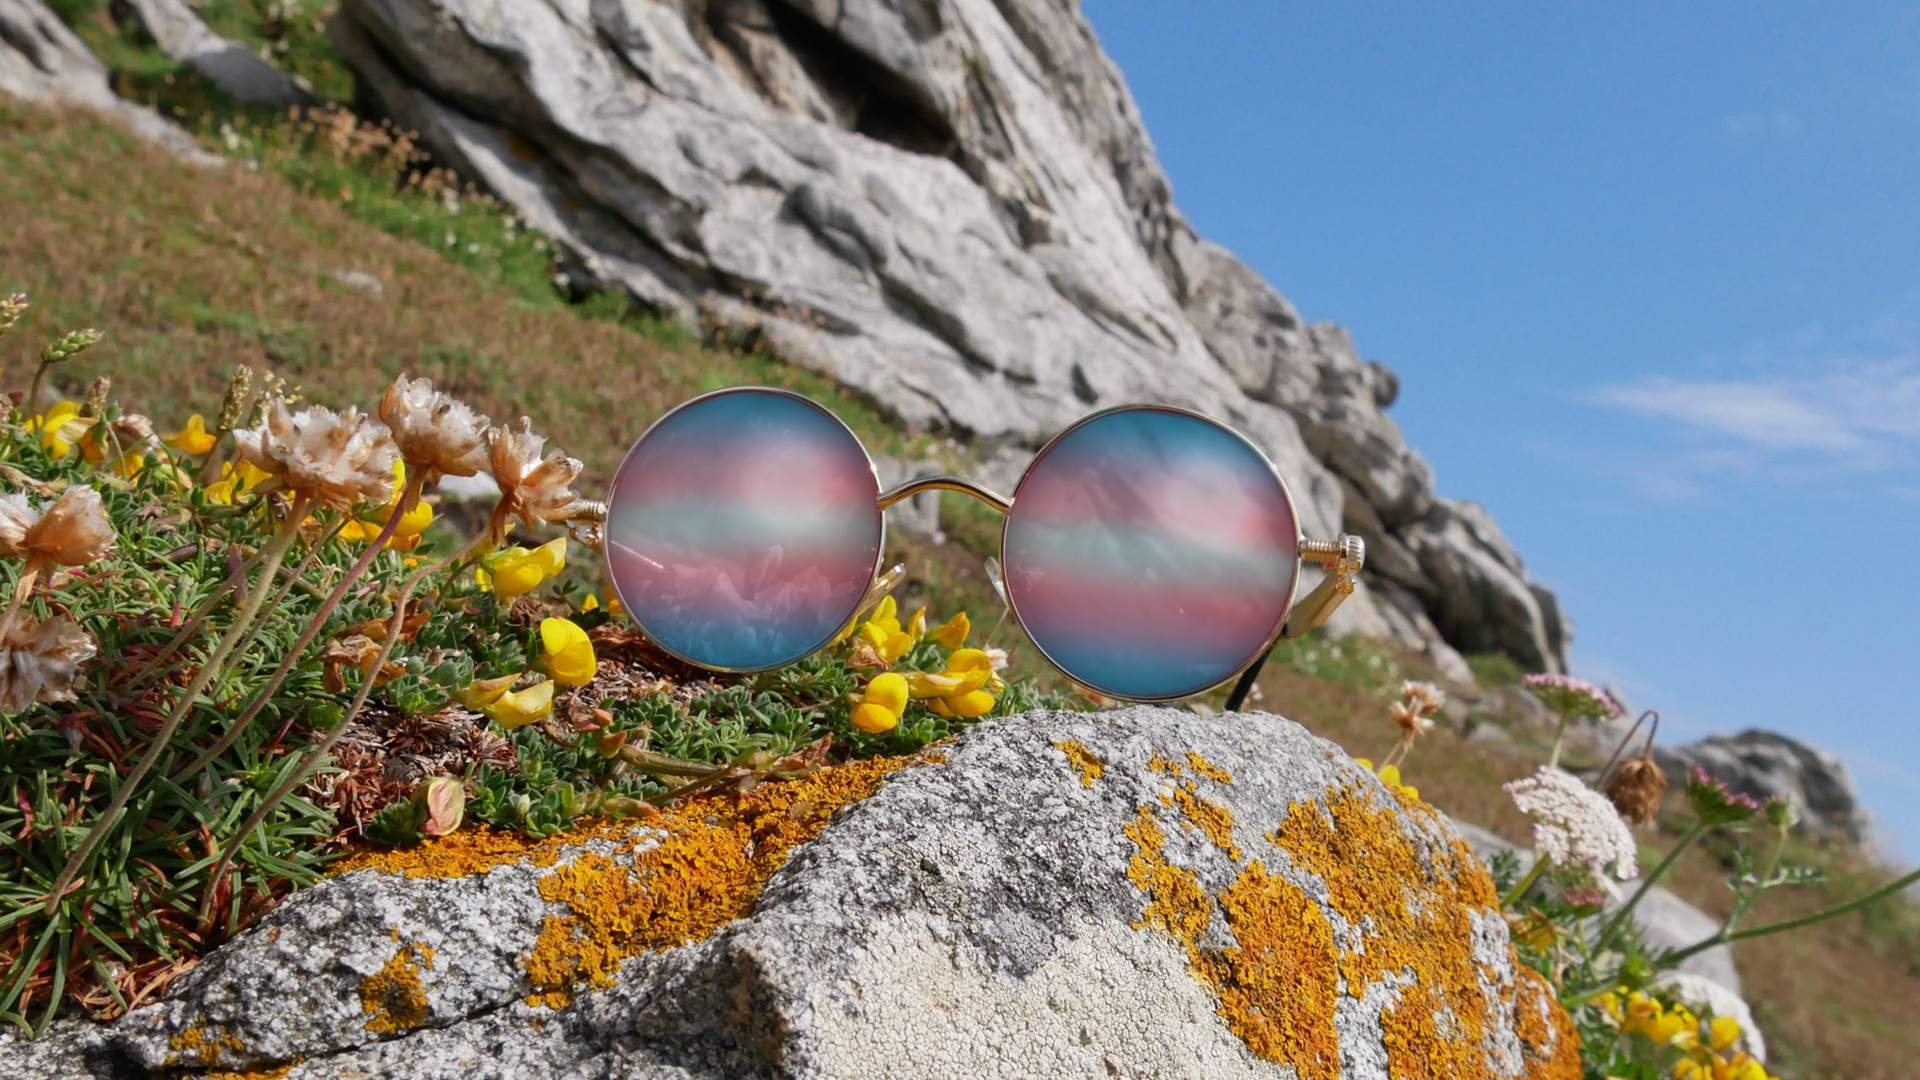 Photo en gros plan d'une paire de lunette de soleil, argentée et ronde, dont les verres reflètent le drapeau de la fierté transgenre. Elles sont posées sur un rocher, dans un décor montagneux et fleuri.